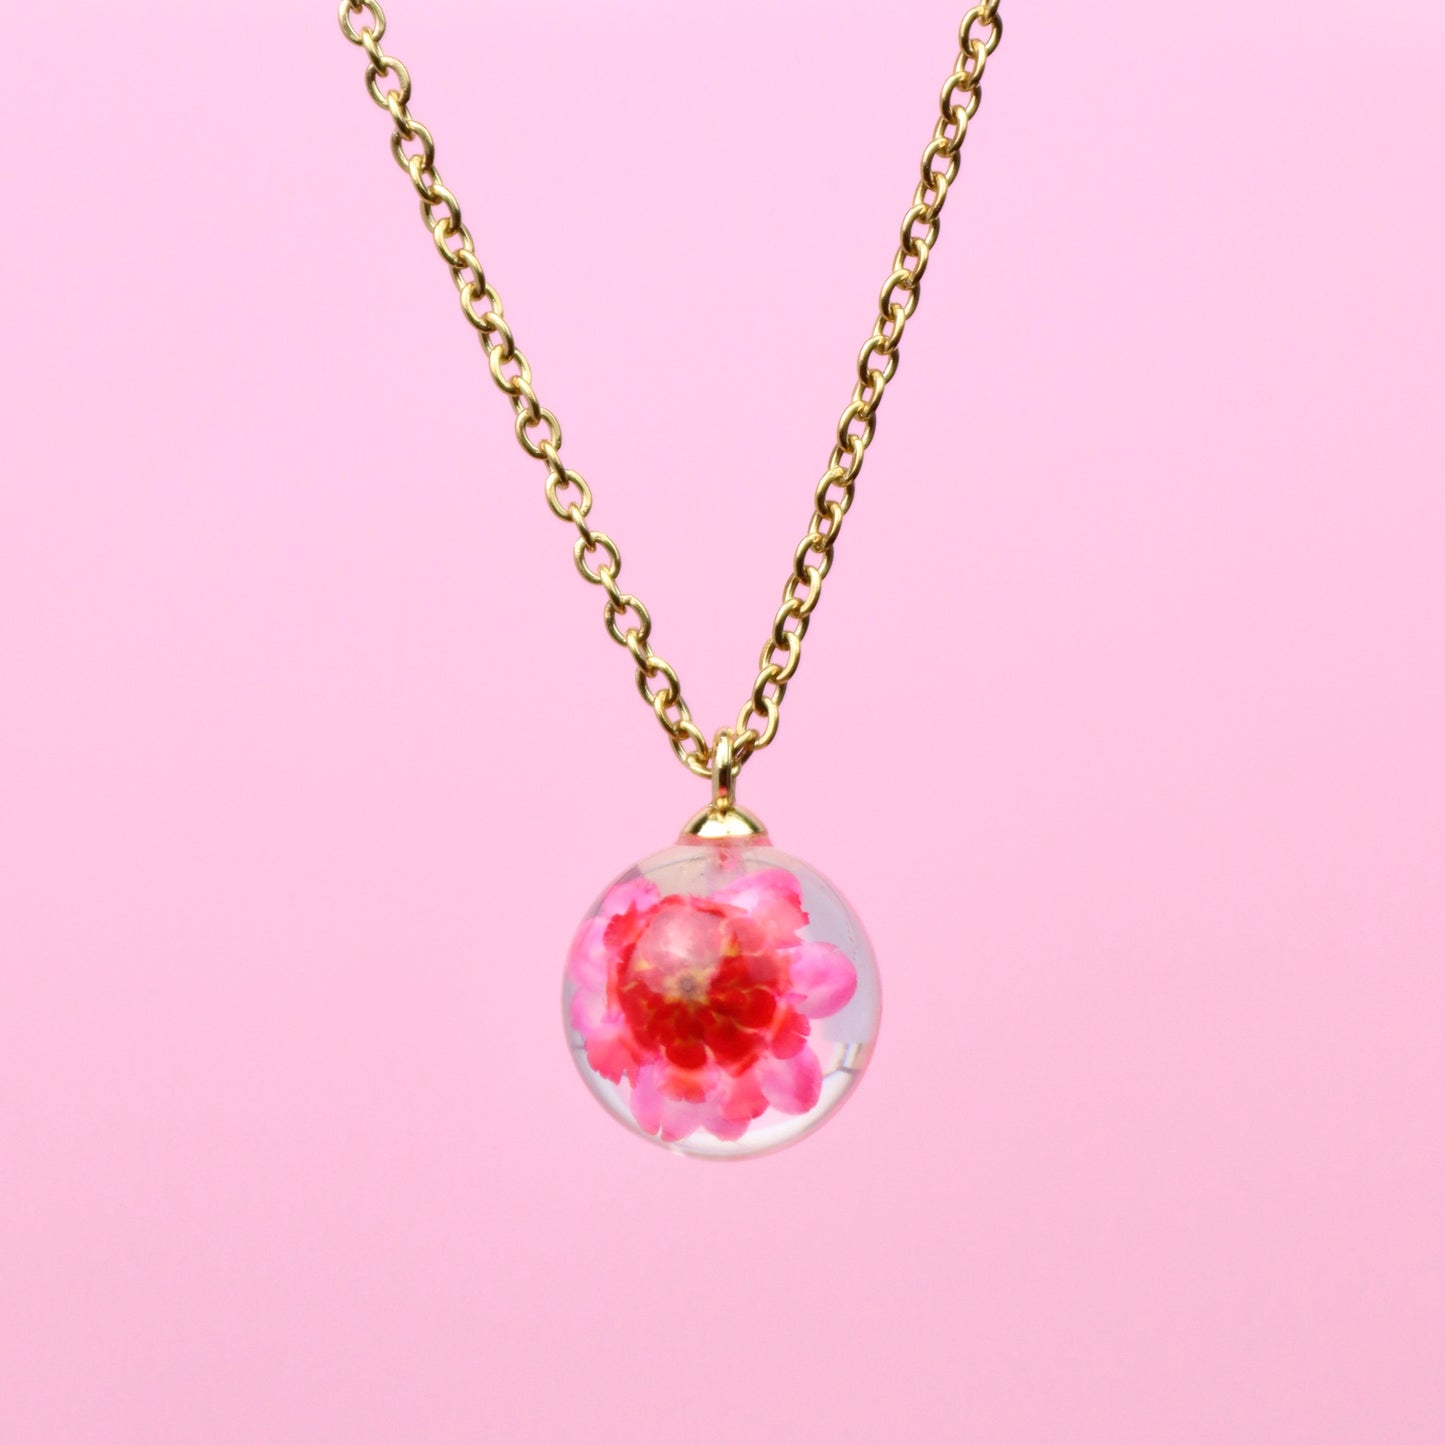 Collana sfera in resina con Glixia rosa e montatura in acciaio inox, collezione ATTRAVERSO